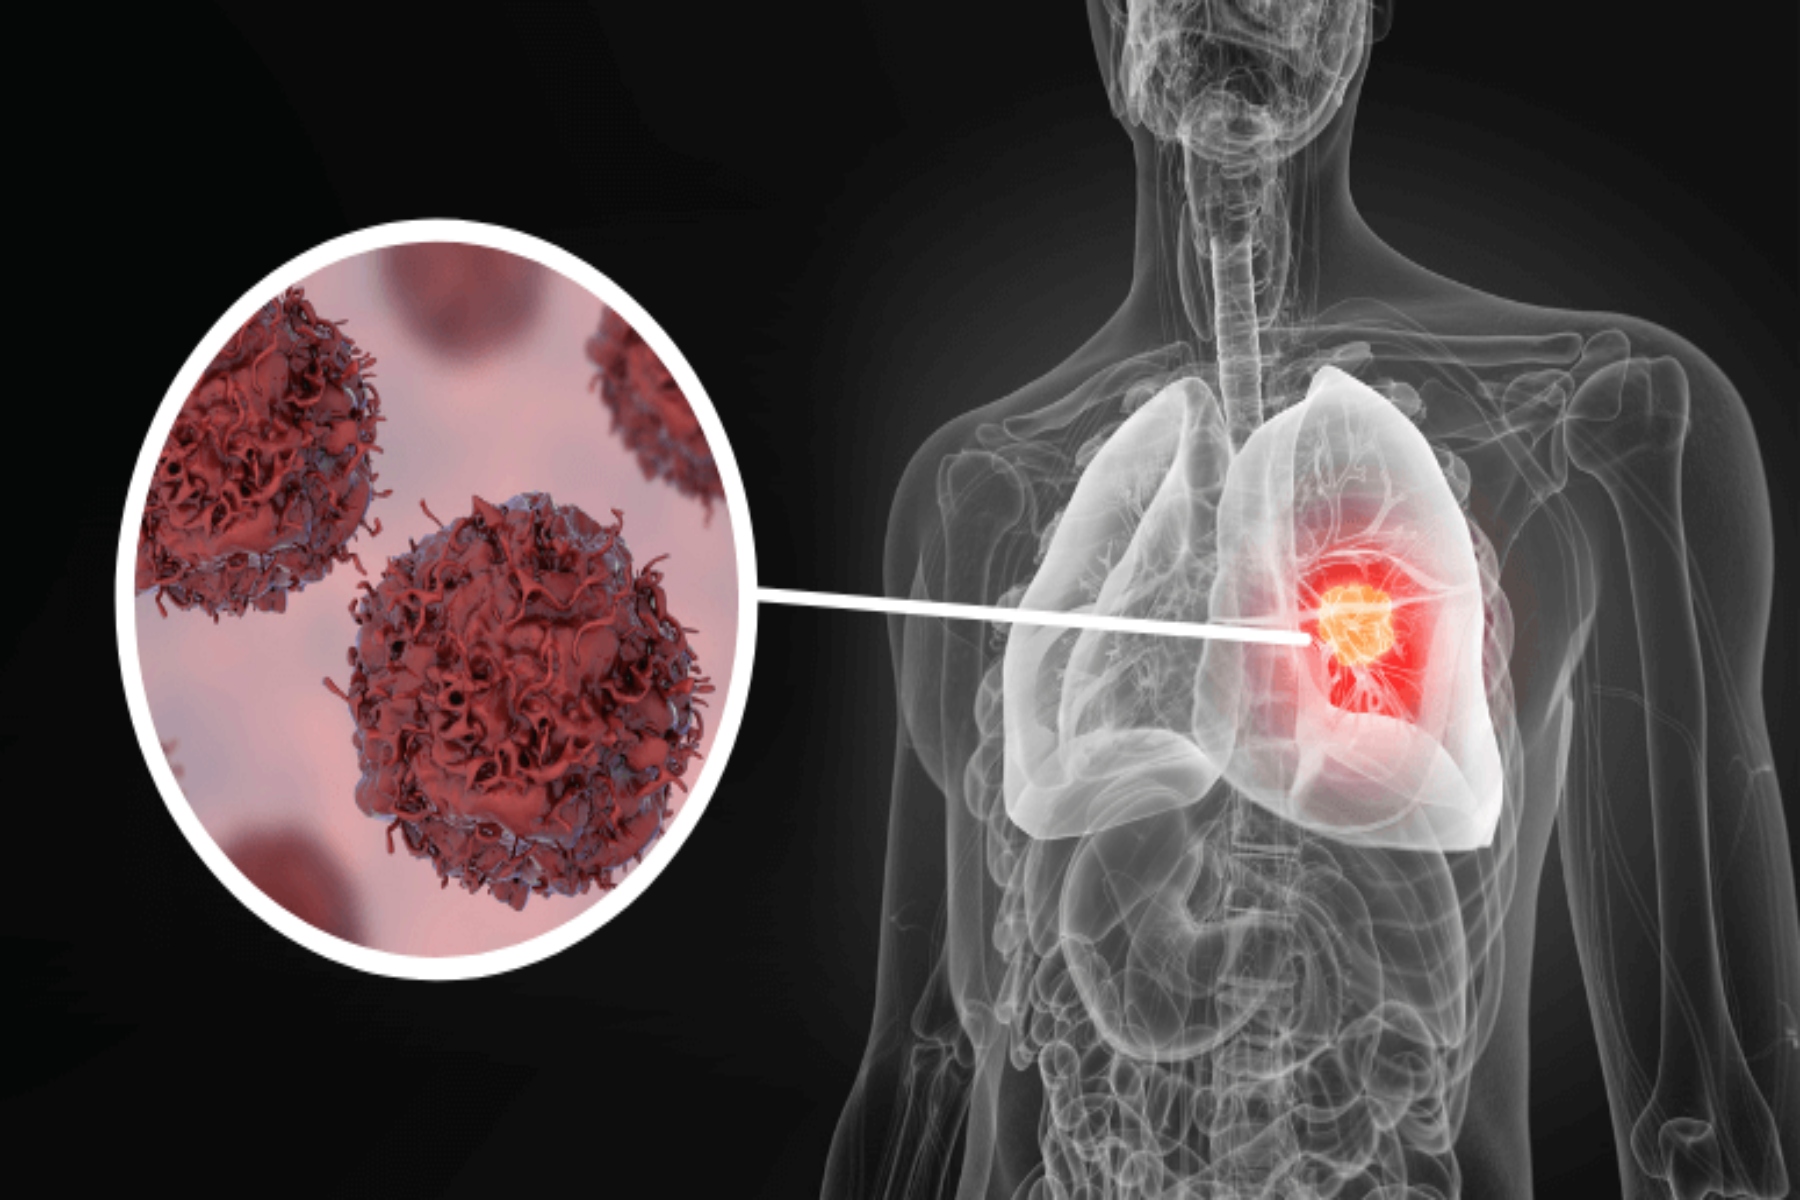 Καρκίνος πνεύμονας: Ποια είναι η πιο συχνή θεραπεία που χρησιμοποιείται για τον καρκίνο του πνεύμονα;